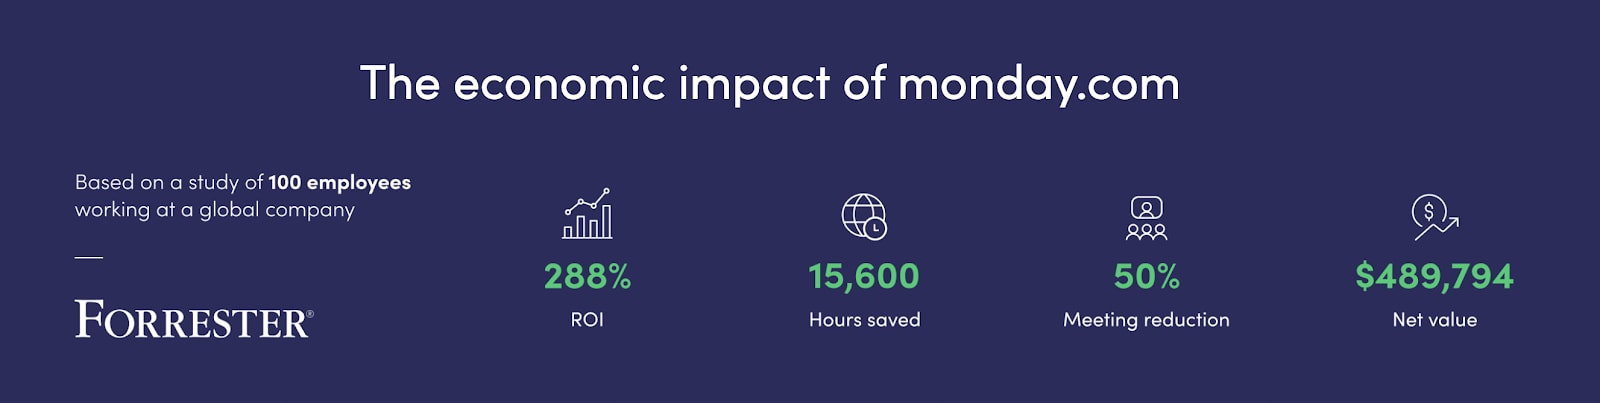 the economic impact of monday.com